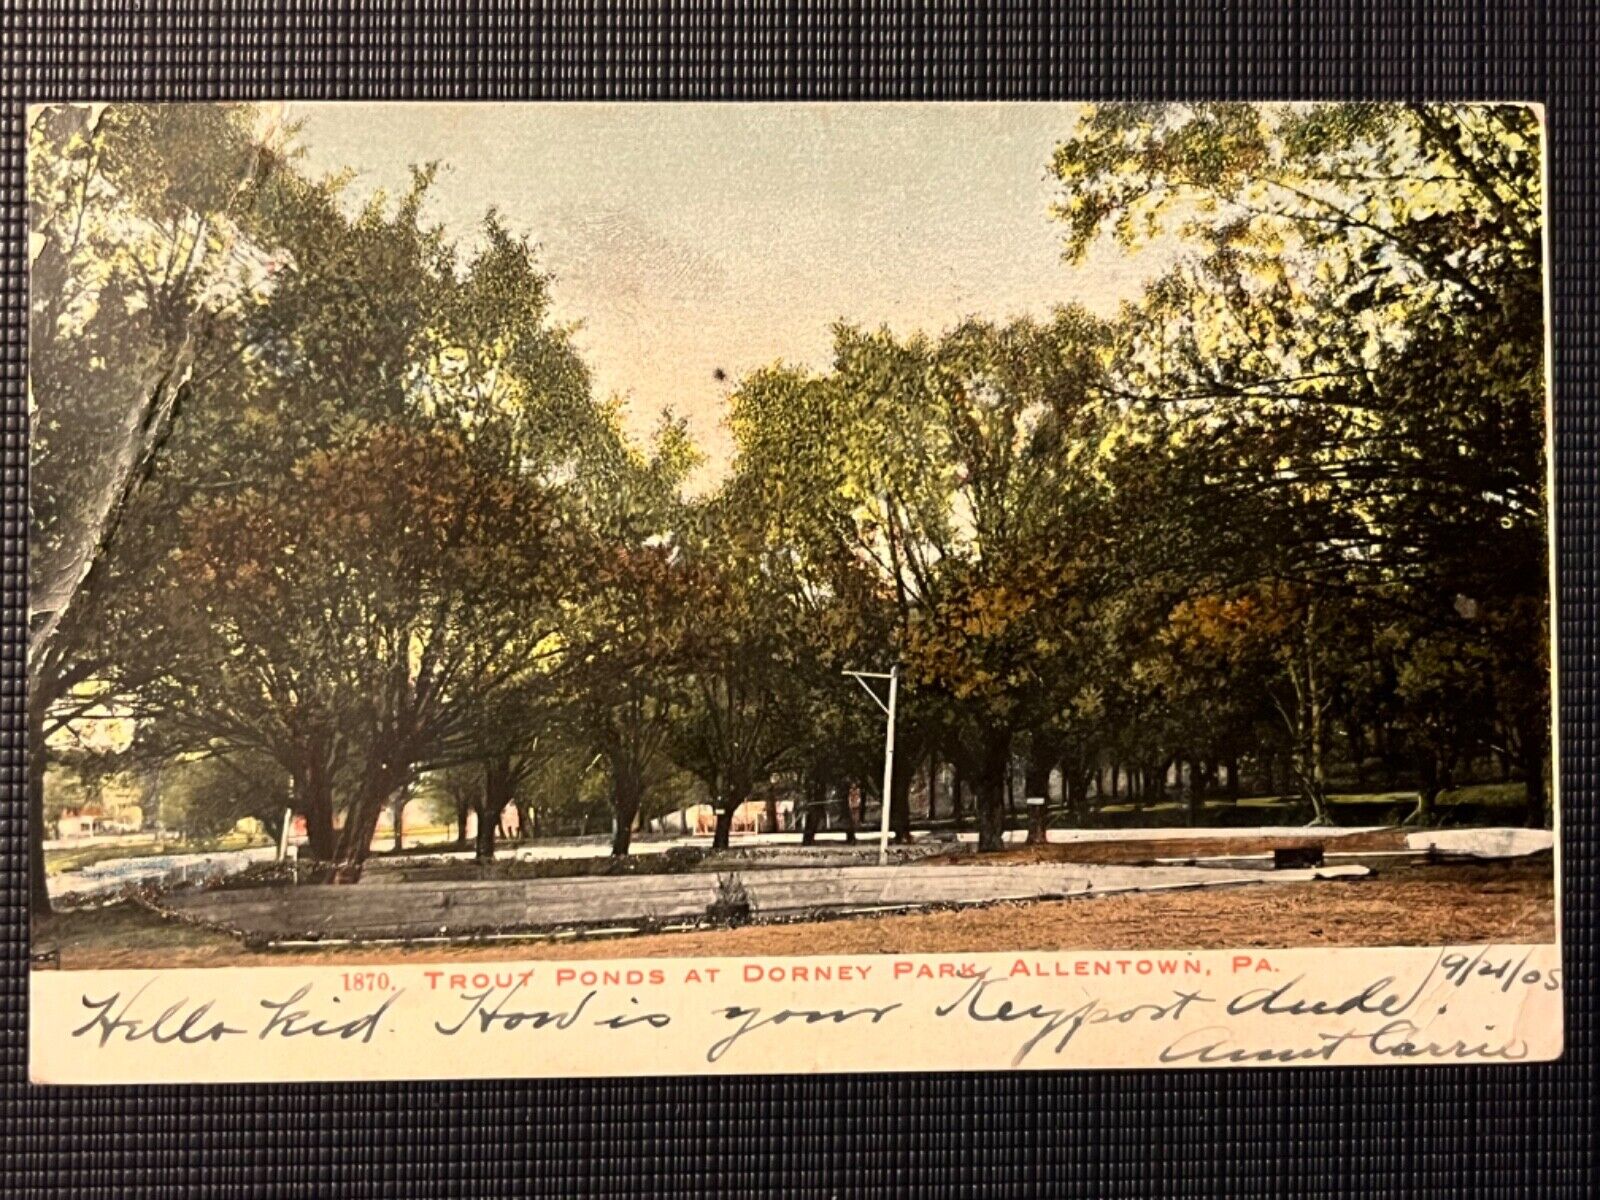 1905 TROUT PONDS AT DORNEY PARK ALLENTOWN PA PENNSYLVANIA POSTCARD